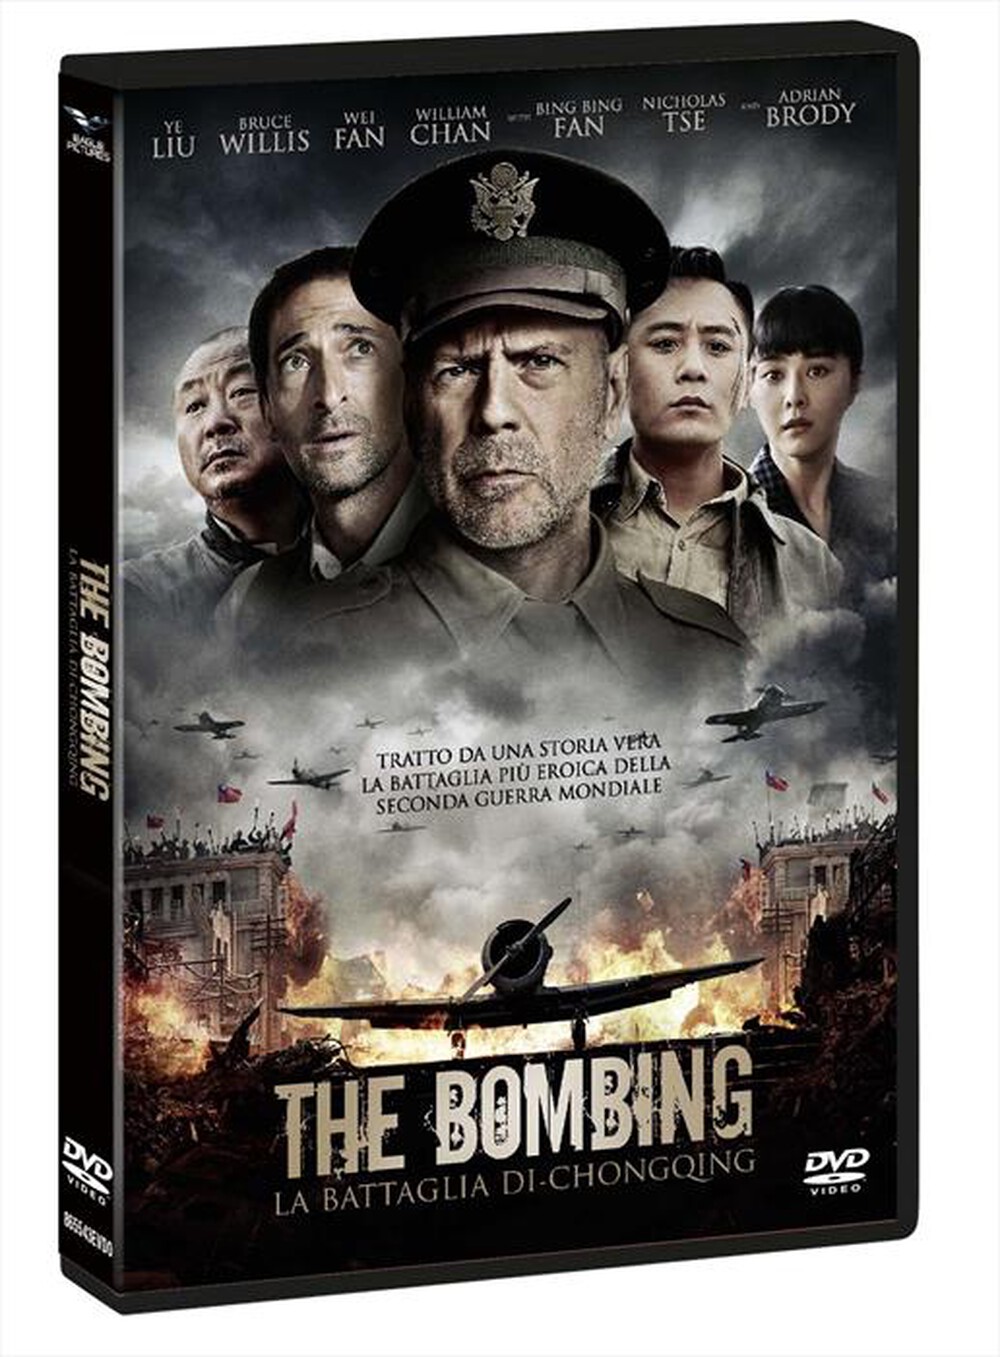 "EAGLE PICTURES - Bombing (The) - La Battaglia Di Chongqing"